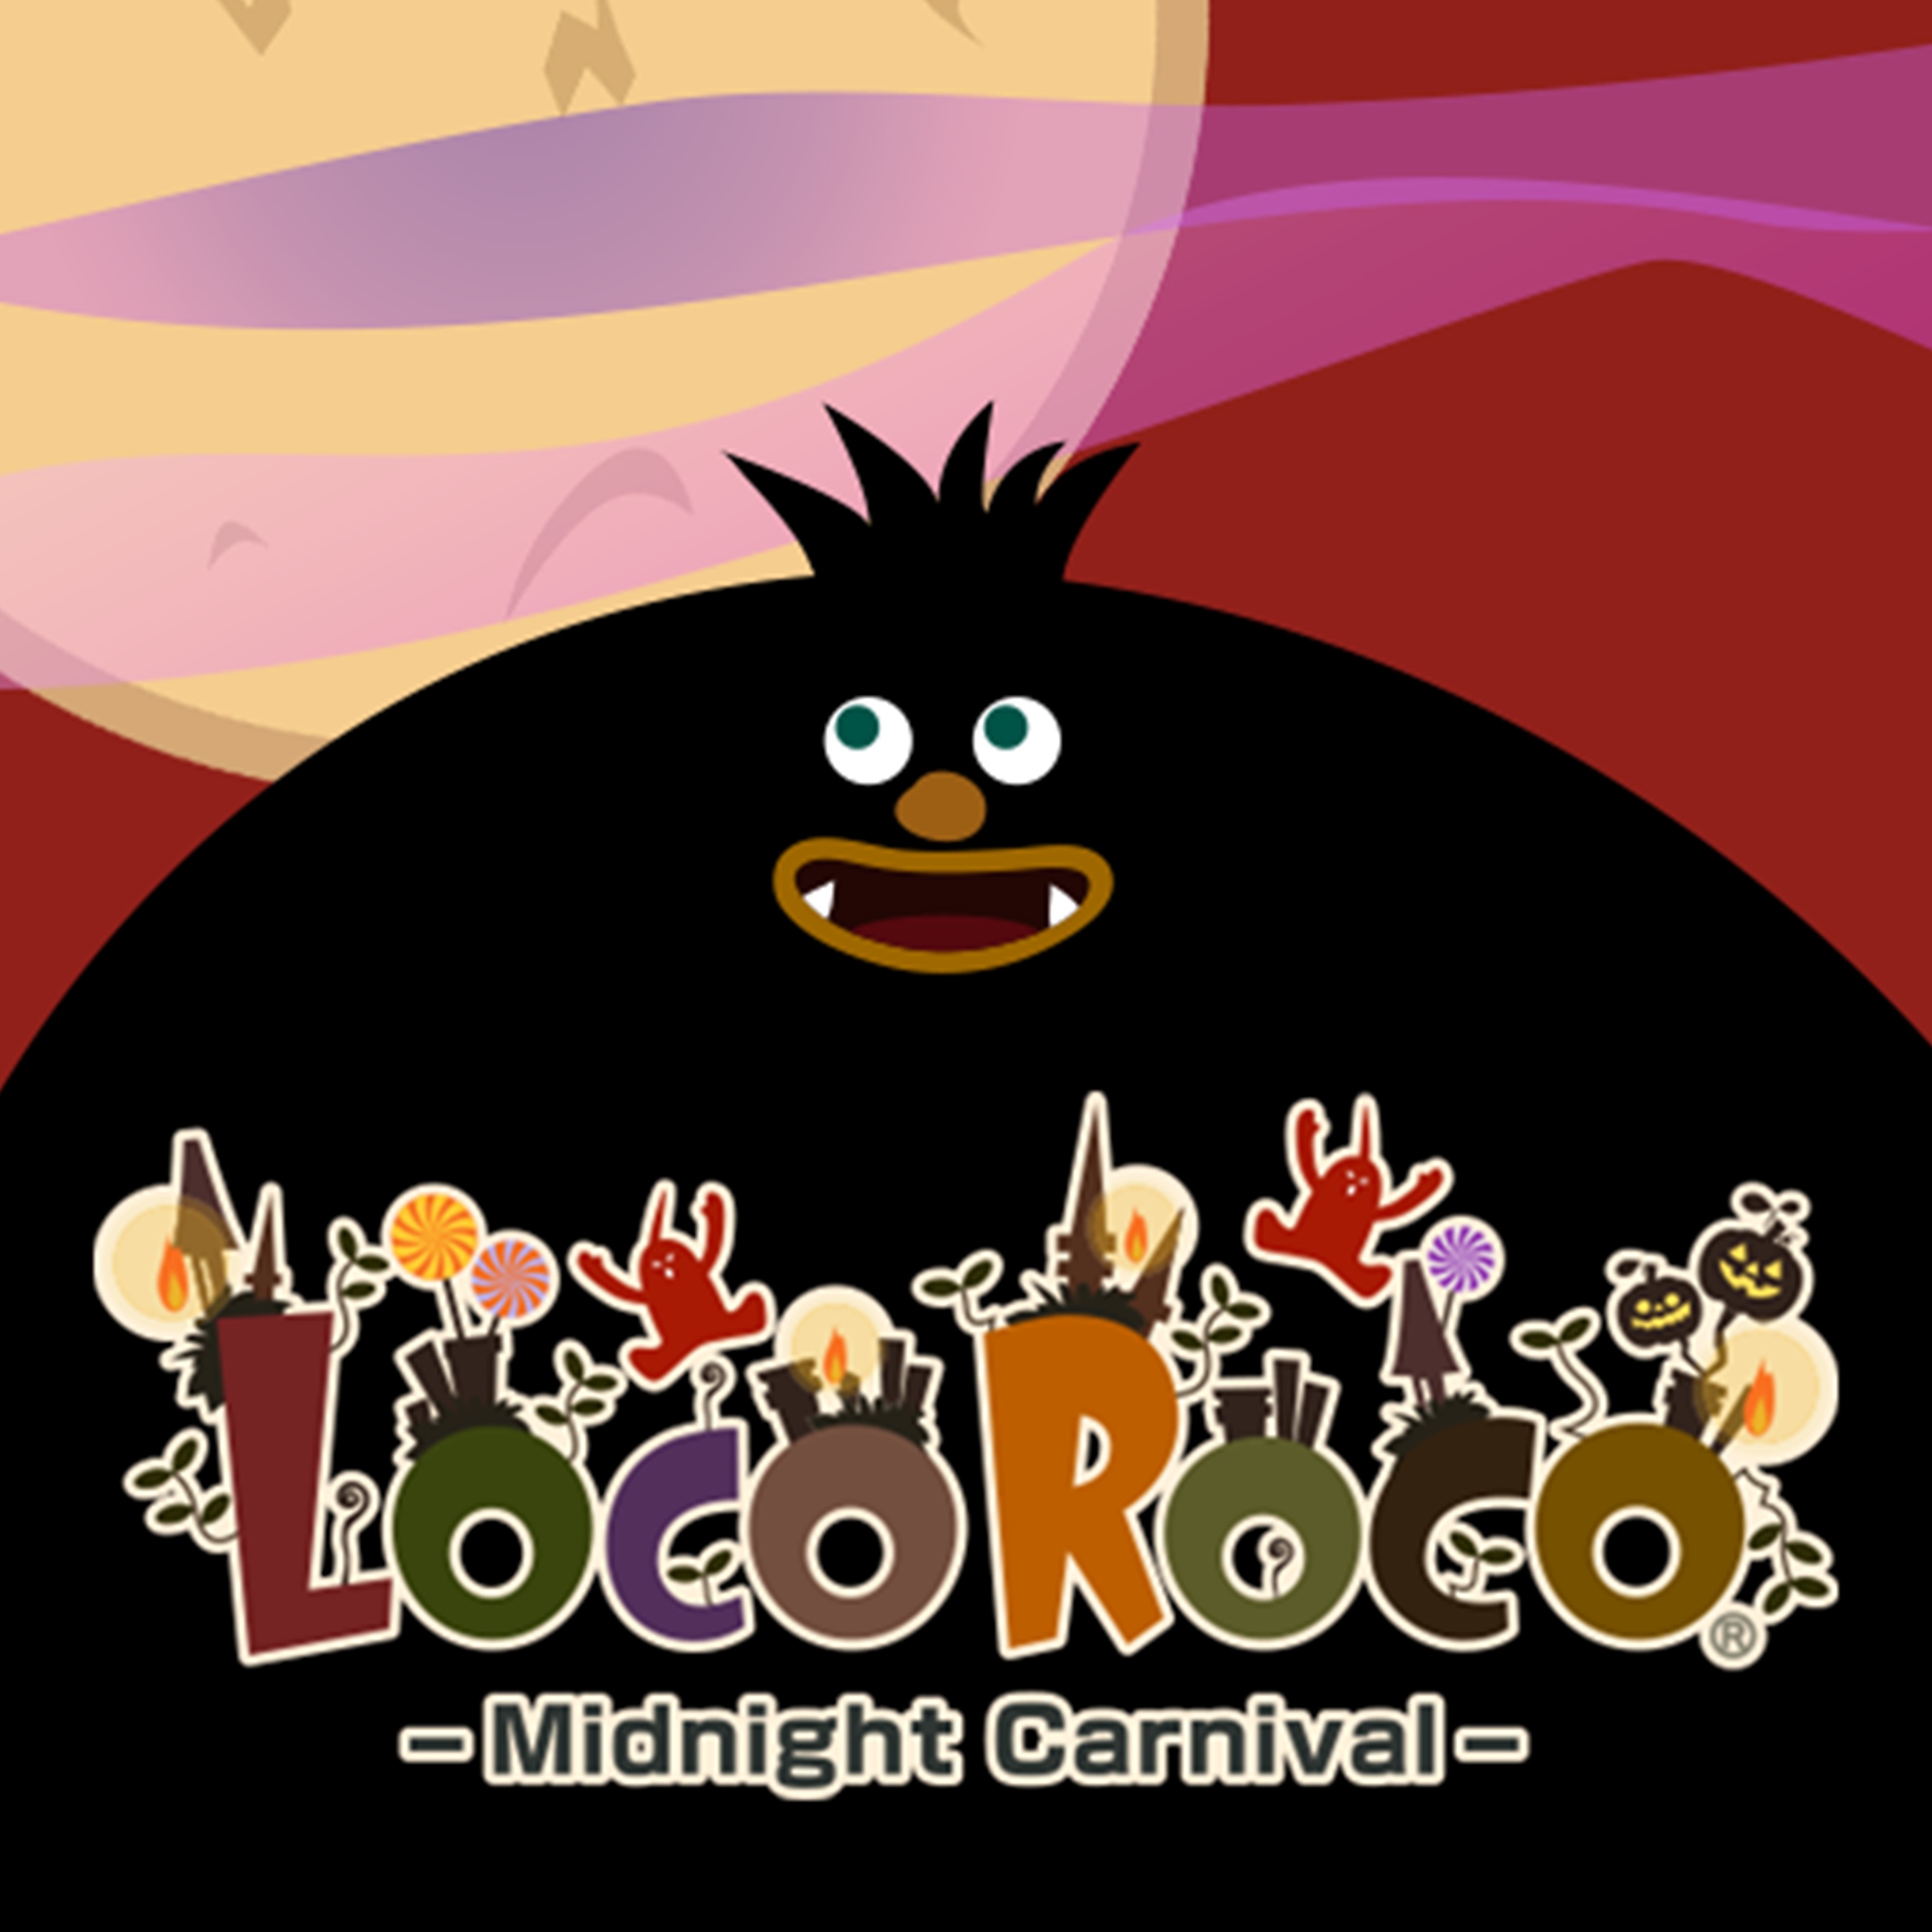 LocoRoco Midnight Carnival - Immagine che mostra una figura nera dei cartoni animati